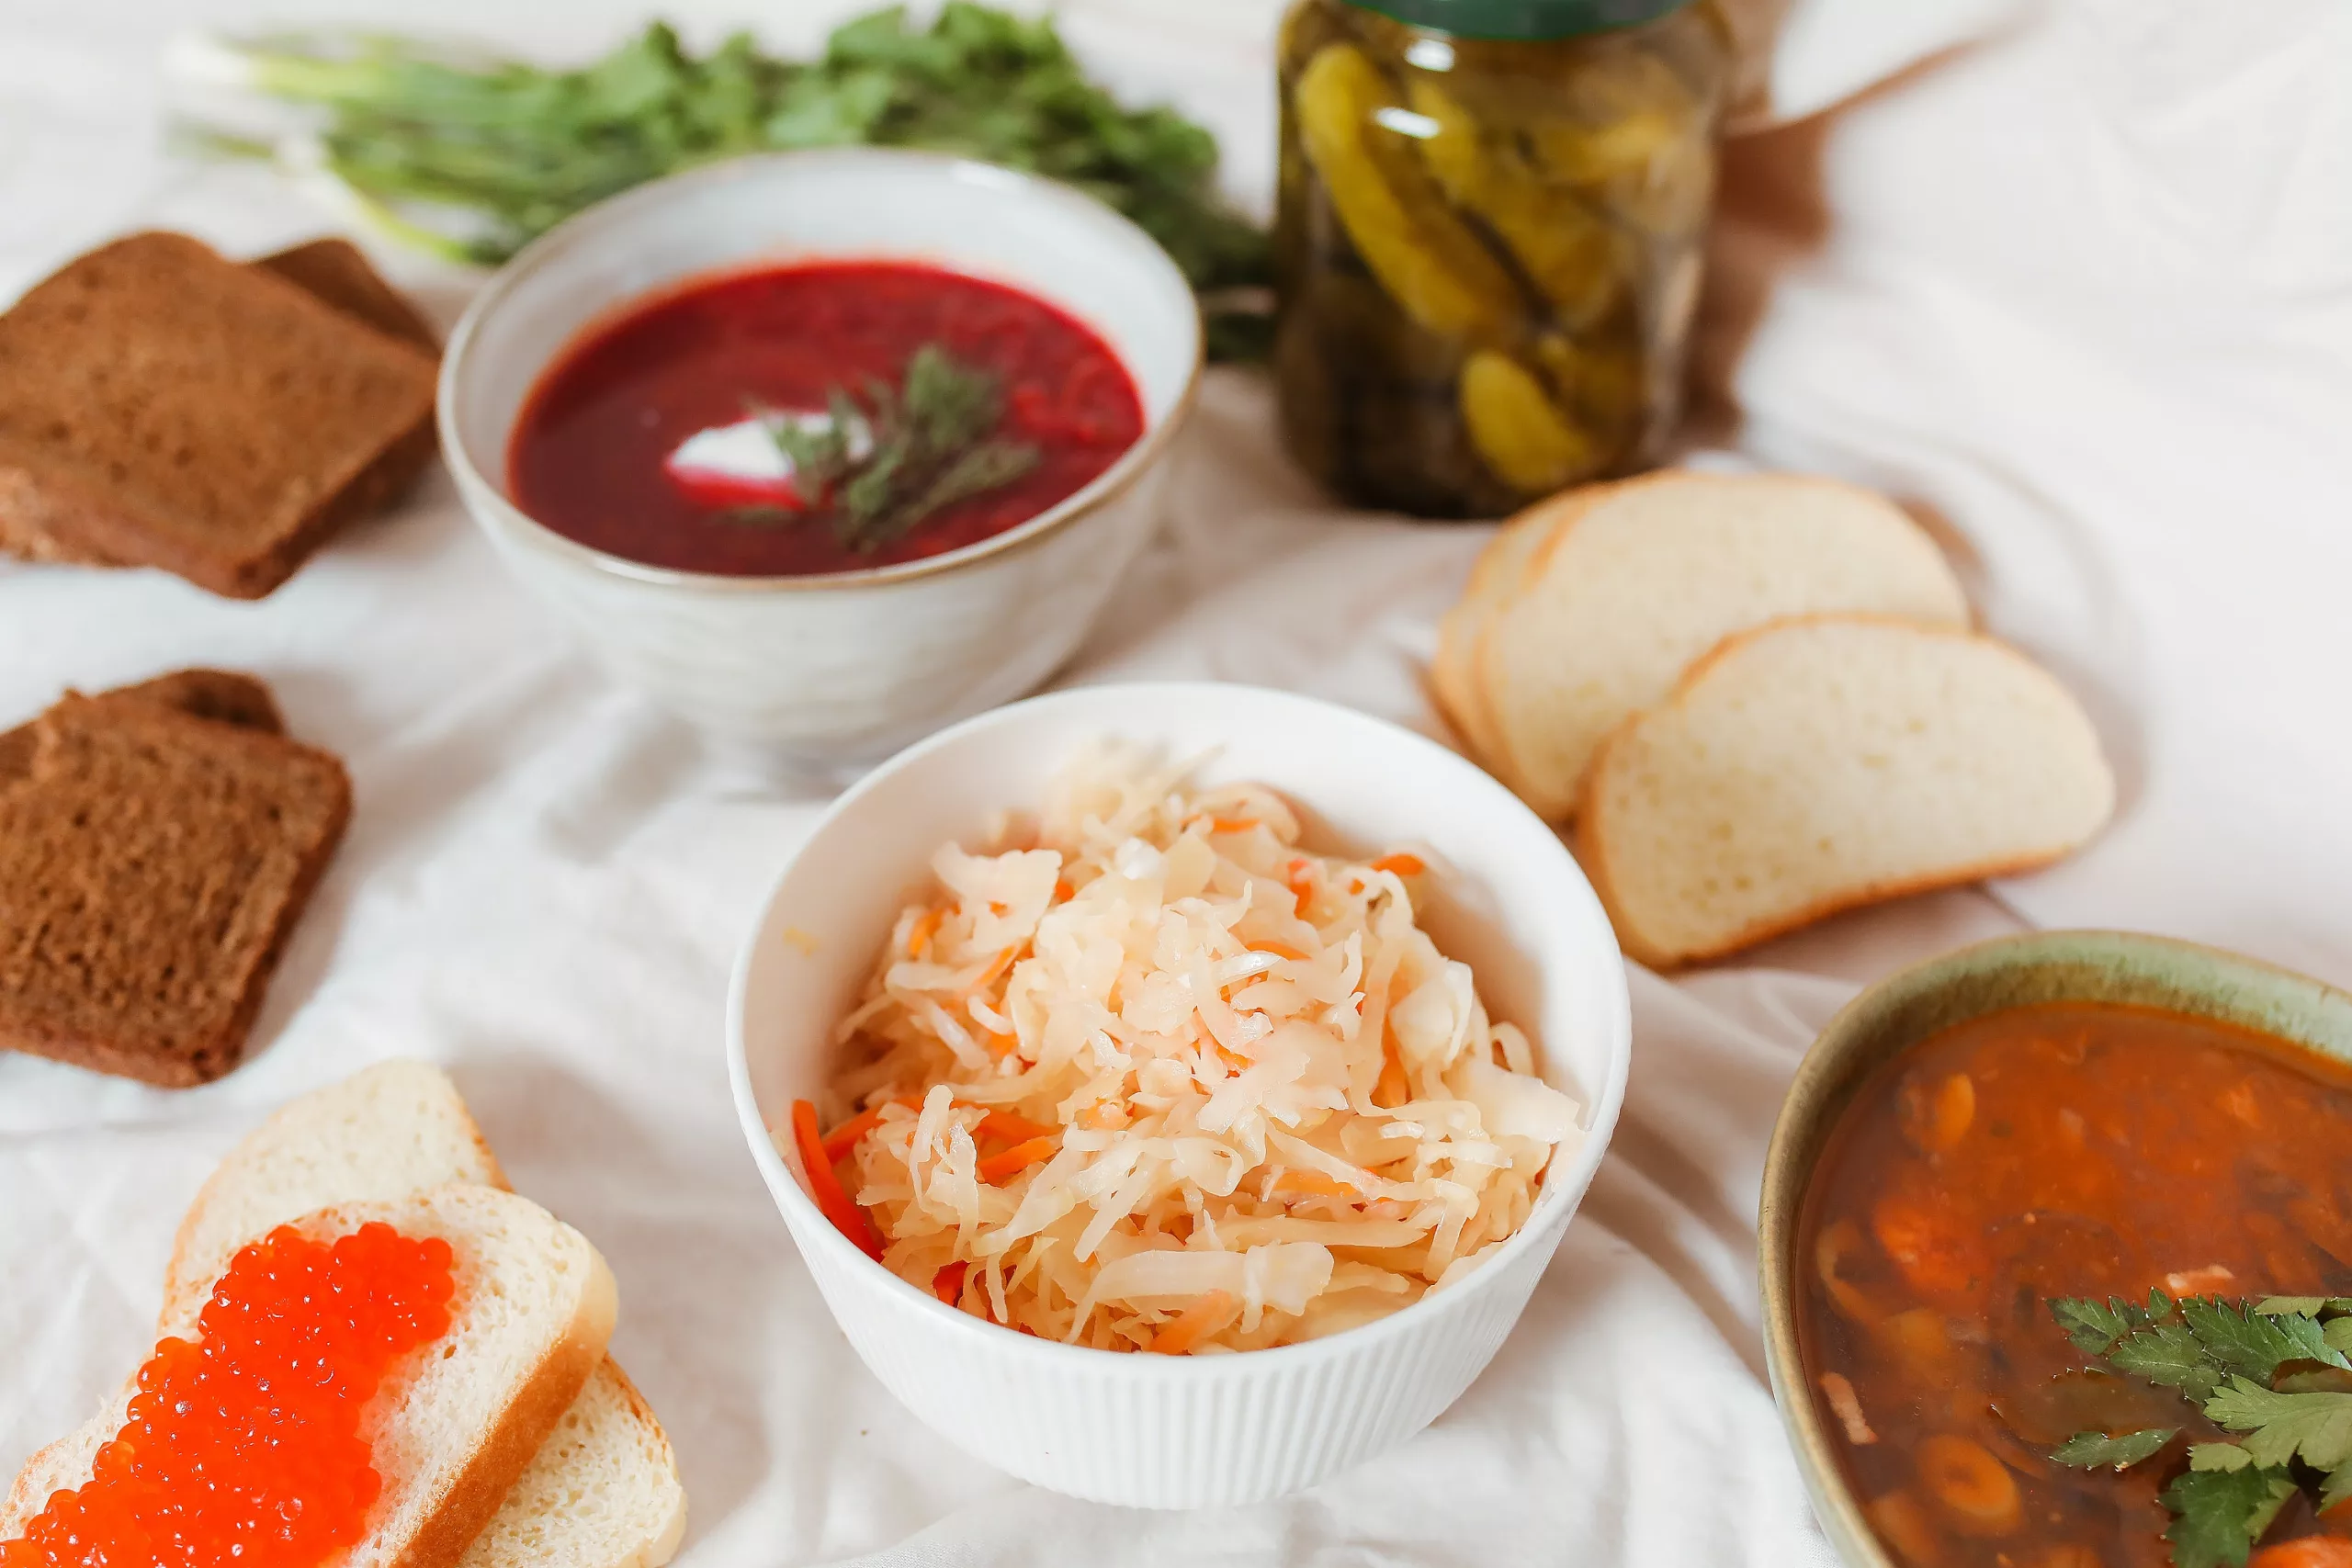 Sauerkraut is a great source of probiotics